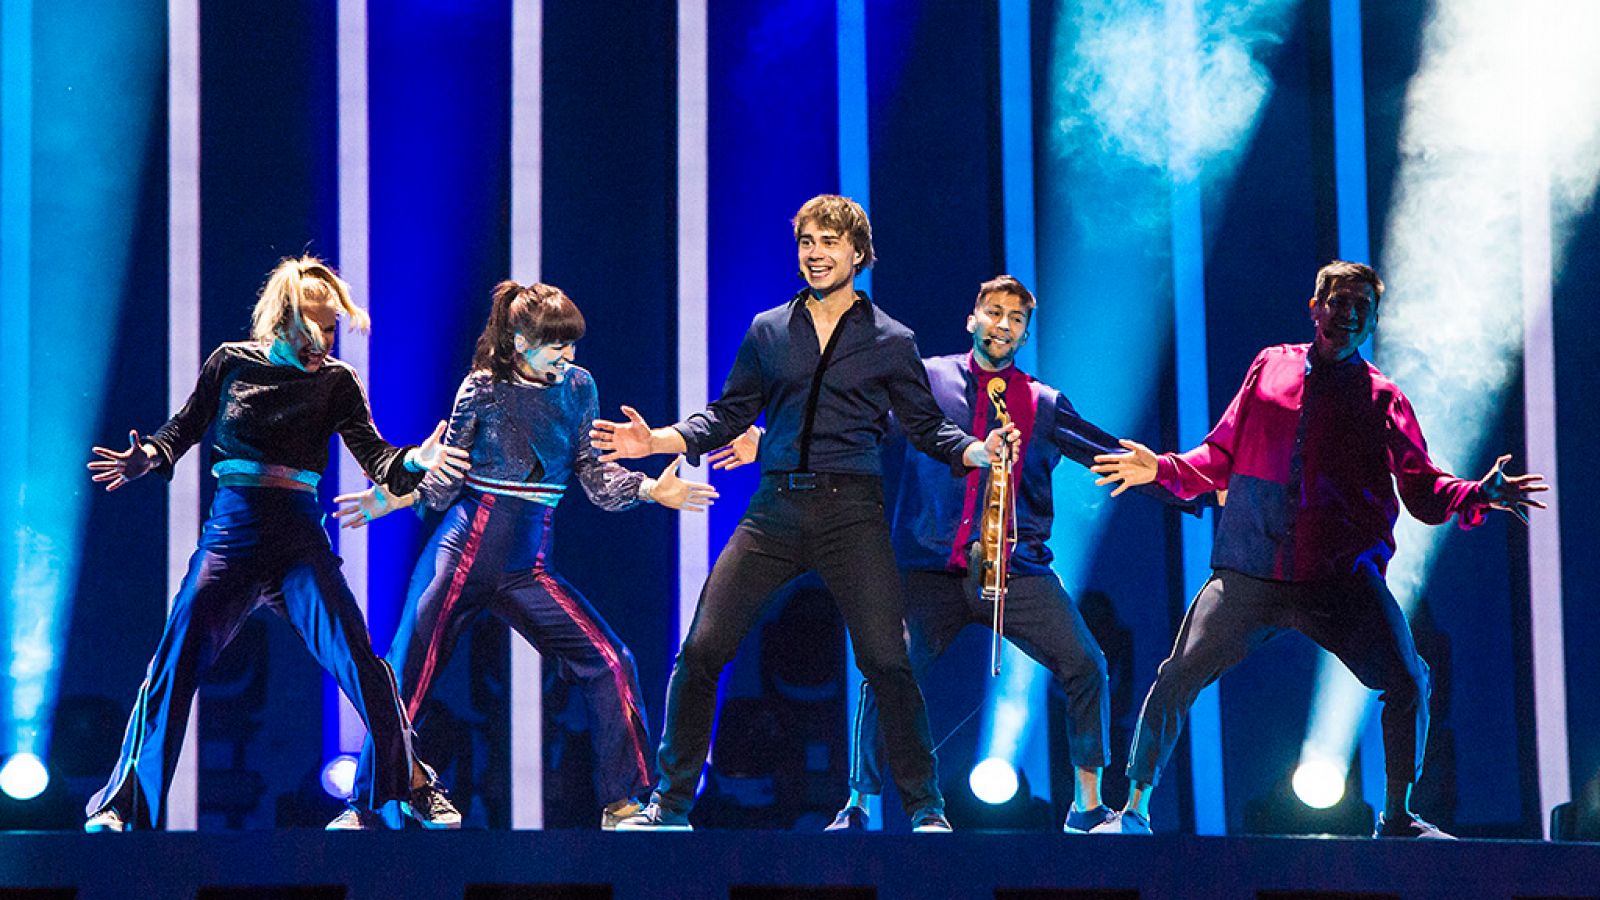 Eurovisión - Noruega: Rybak canta "That's how you write a song" en la final de Eurovisión 2018